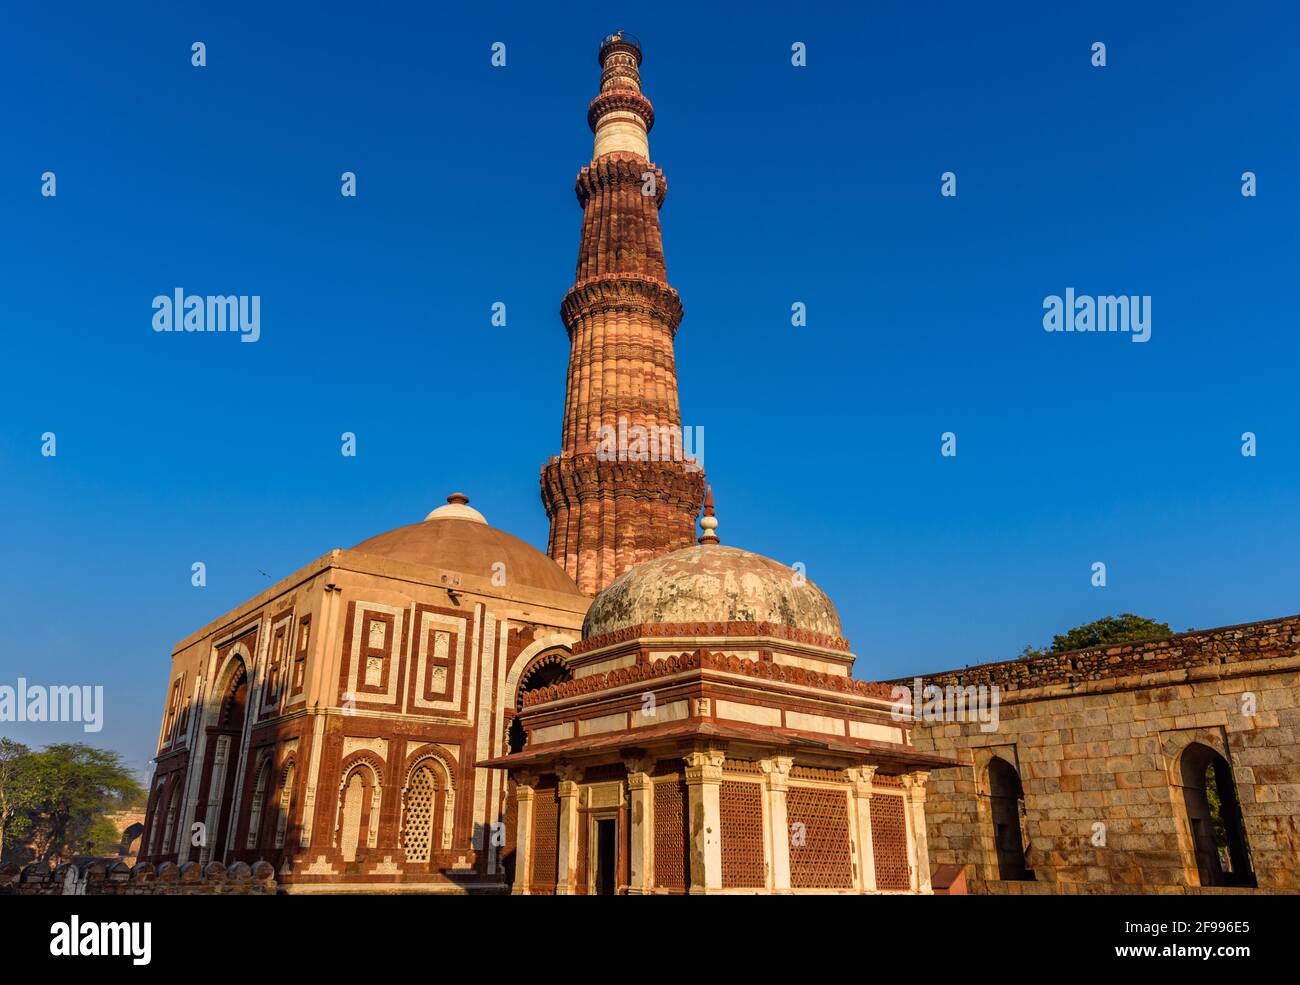 Il Qutub Minar è un minareto più alto dell'India, con una torre rastremata di 73 m di altezza, composta da cinque piani di arenaria rossa e marmo, fondata nel 1192. Io Foto Stock